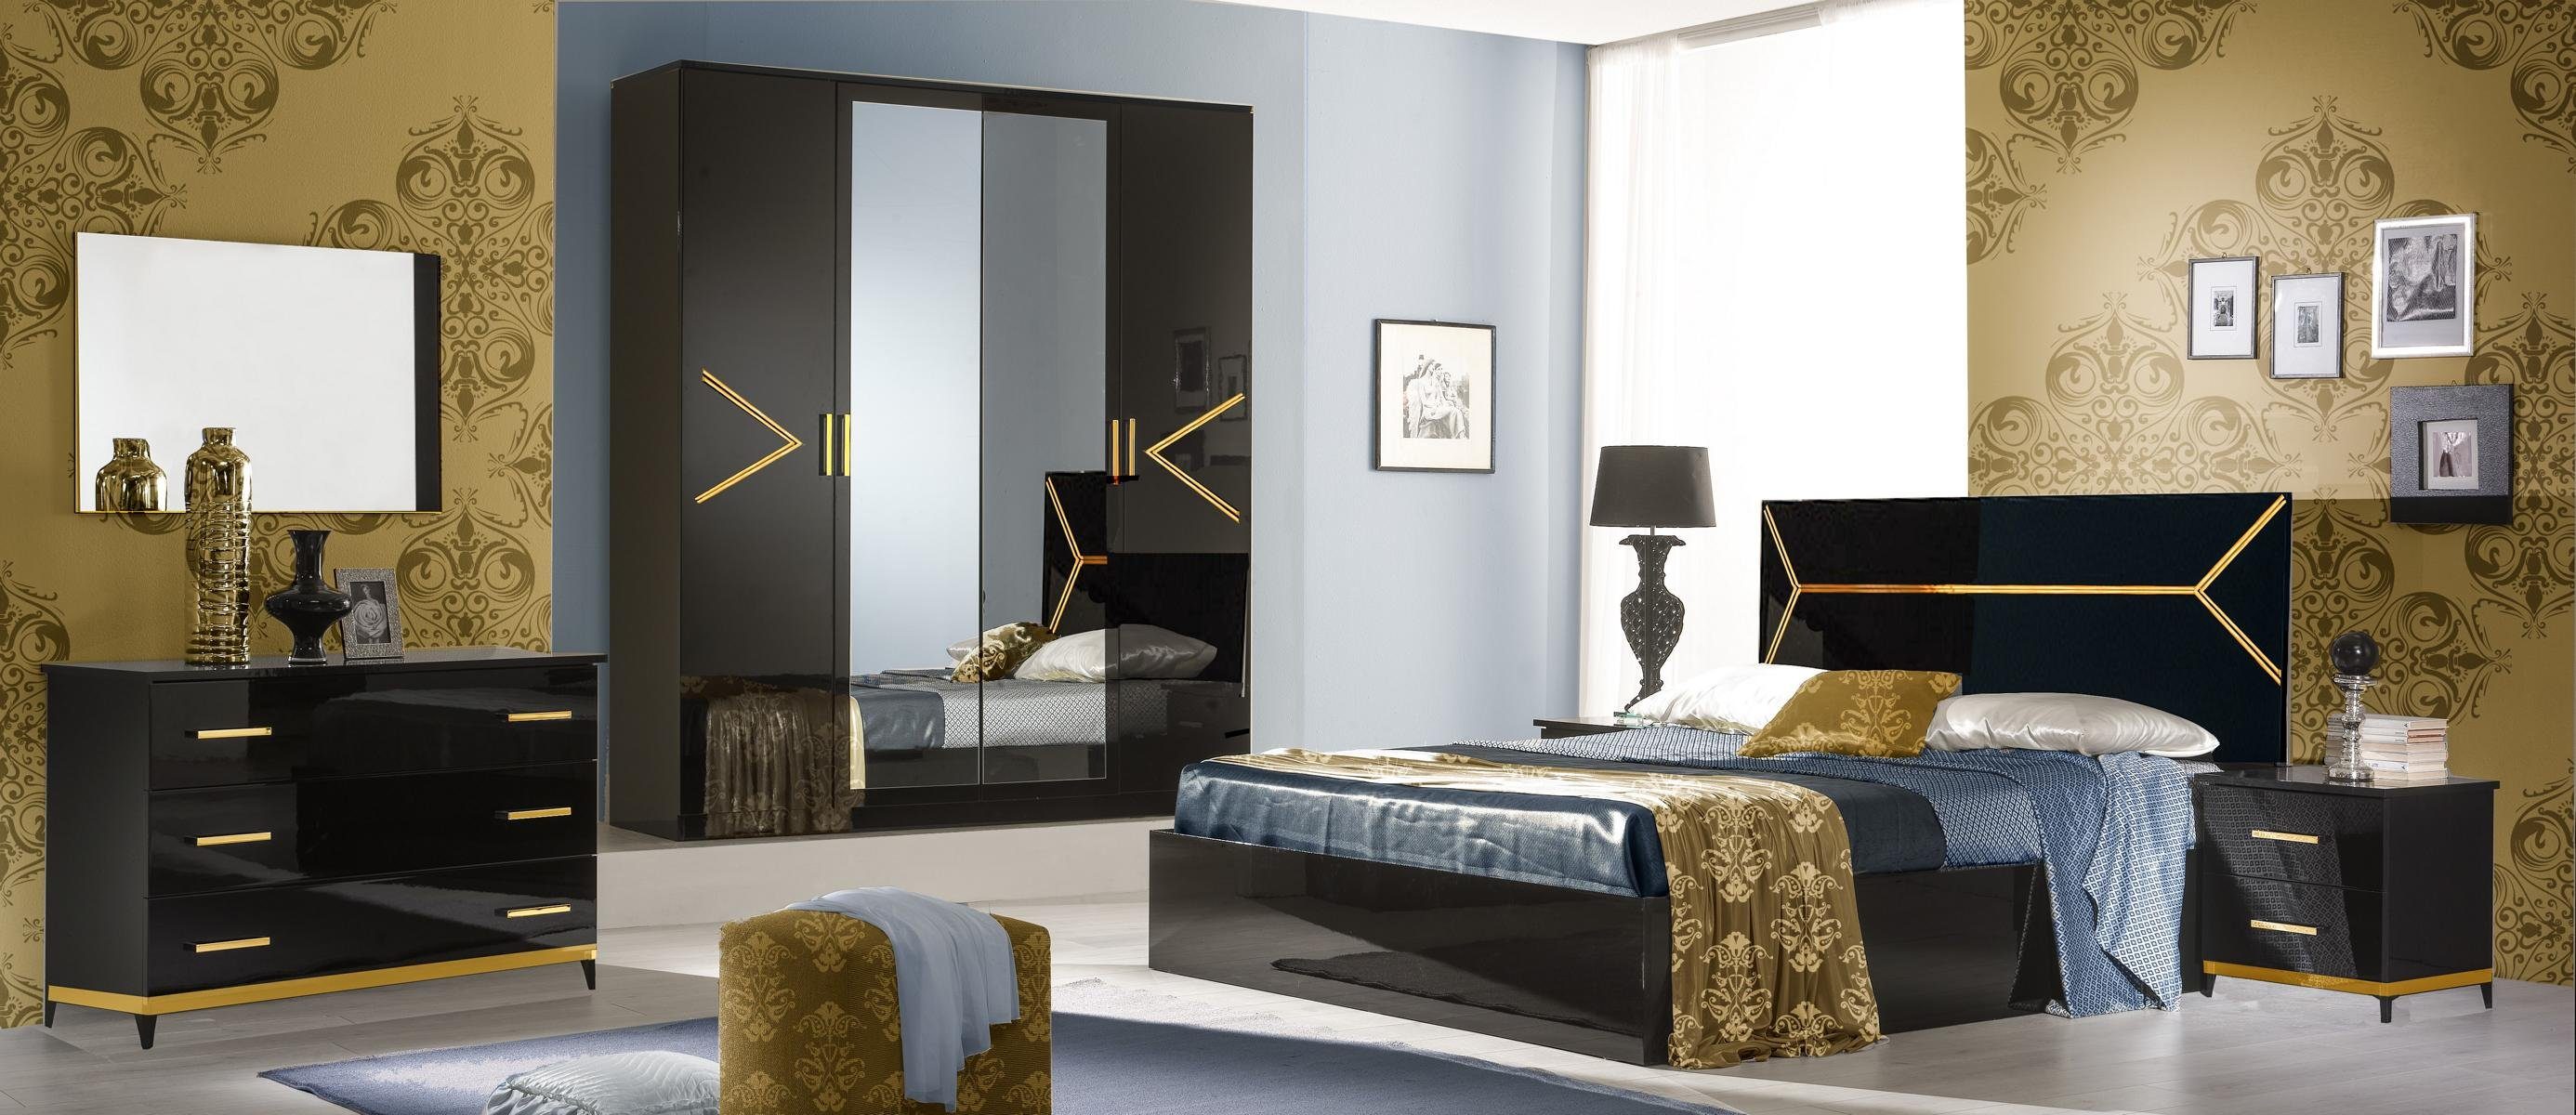 JVmoebel Schlafzimmer-Set Schlafzimmer Set Garnitur Luxus Modern Stil Bett 6 tlg. Holz Kommode